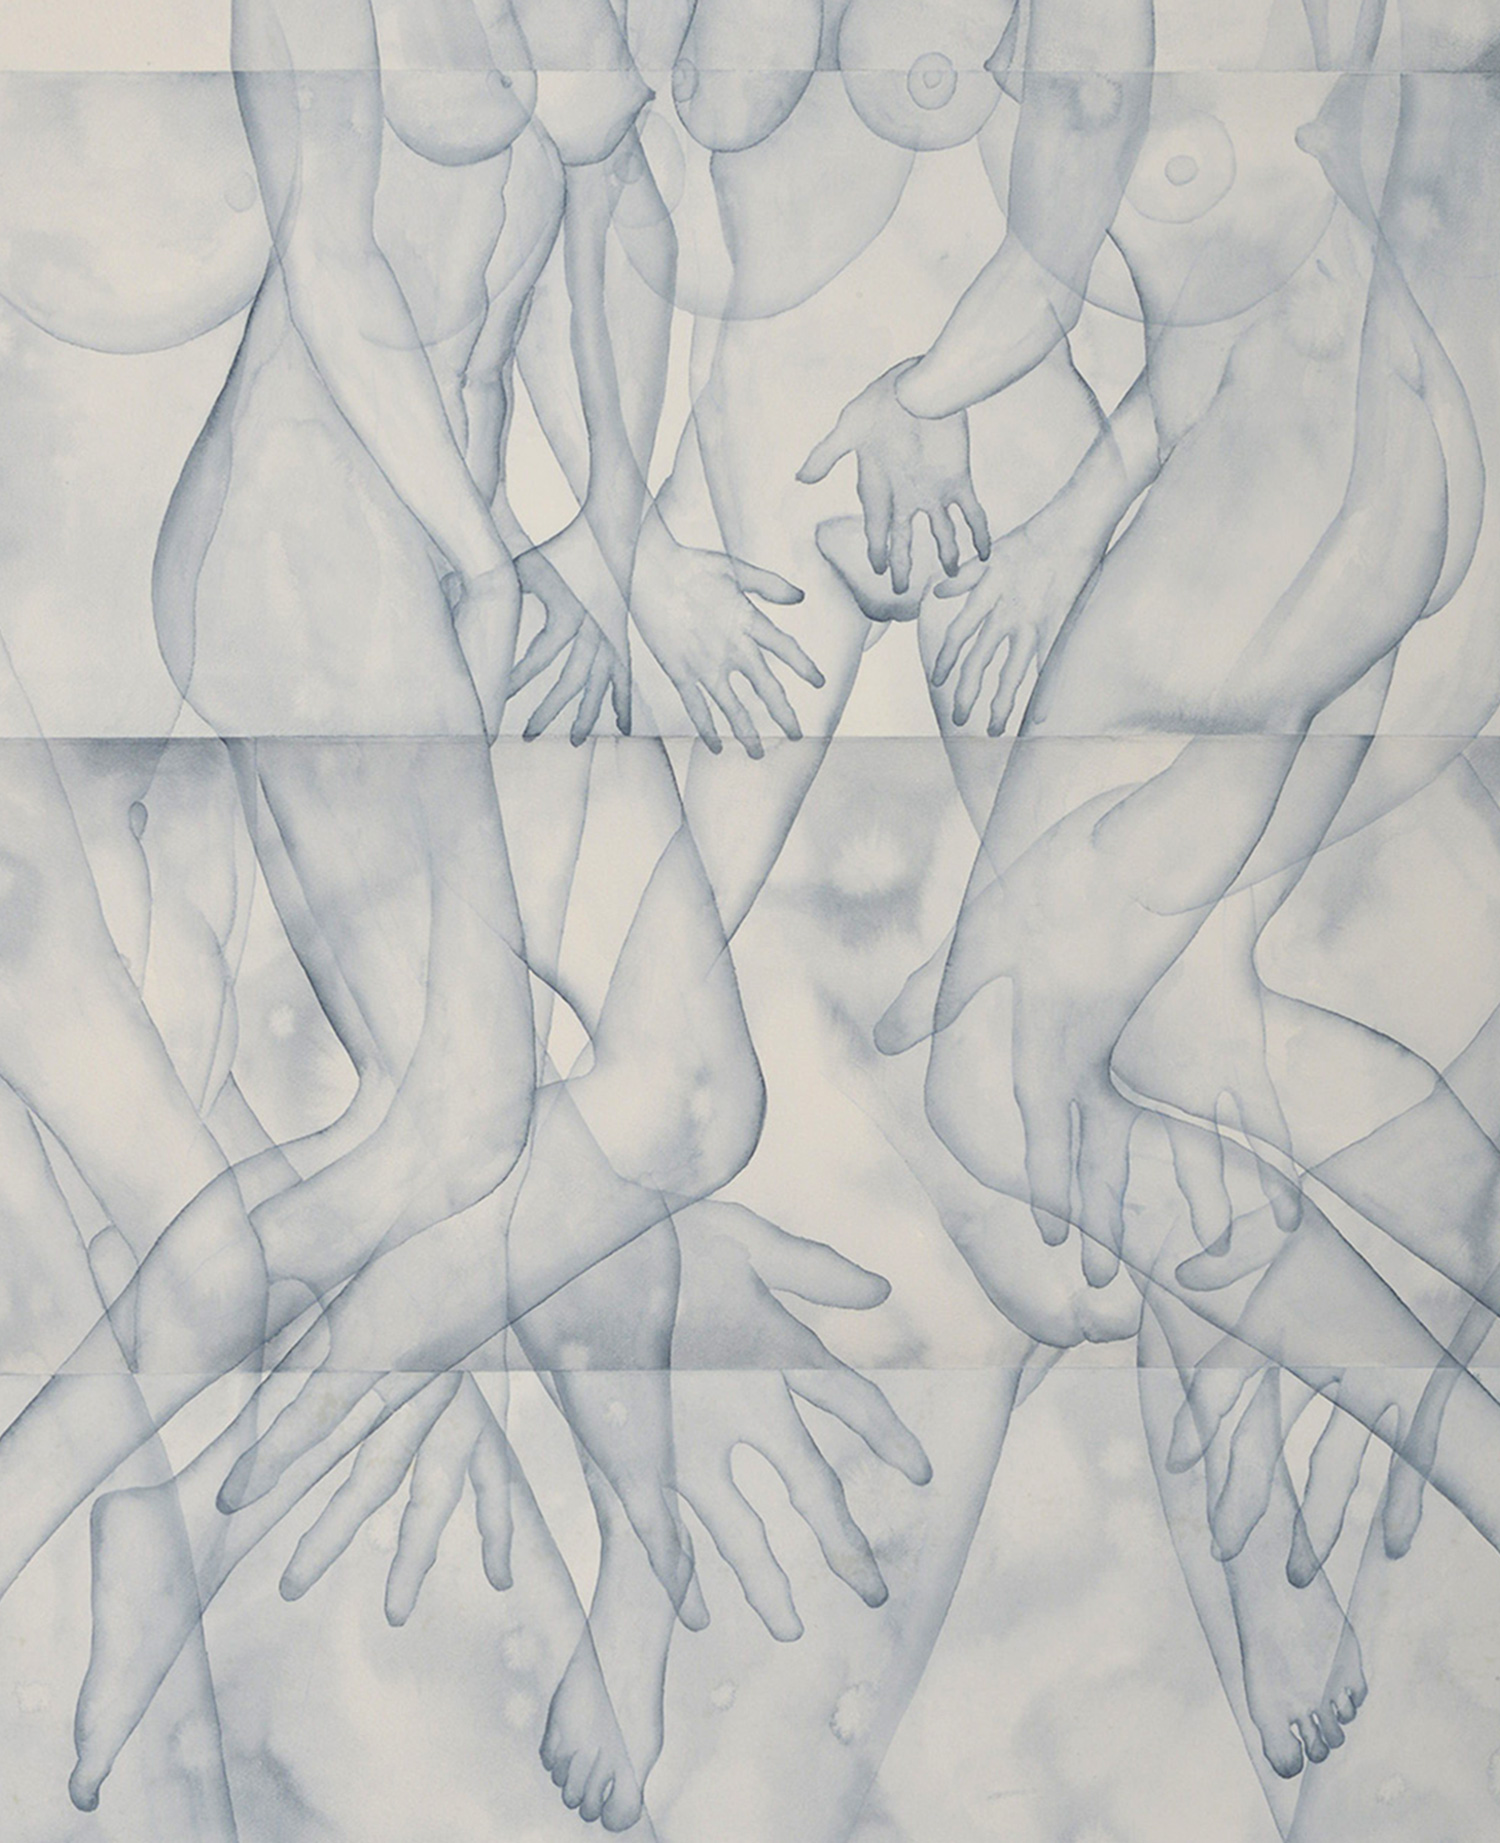 Stefano Bonzano, Mani, acquerello su carta applicato su due pannelli, 110x130 cm, 2019.